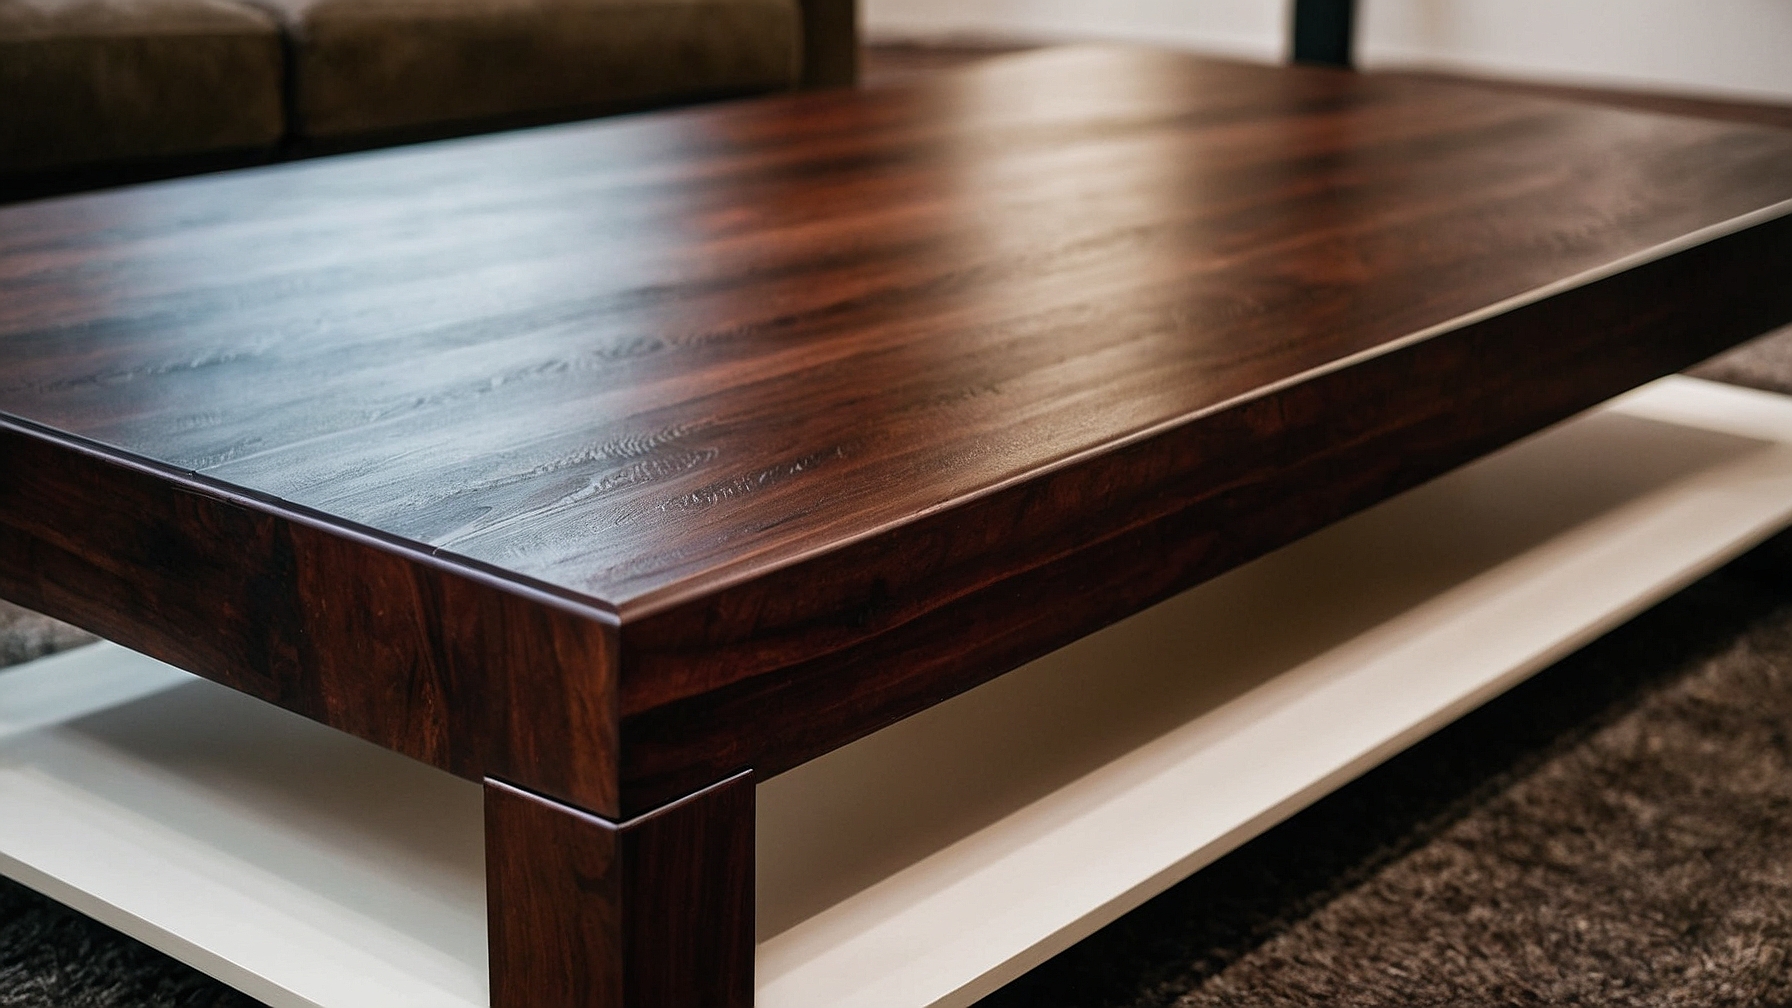 Default Minimalist house Wood Coffee Table Modern Style Timel 0 4